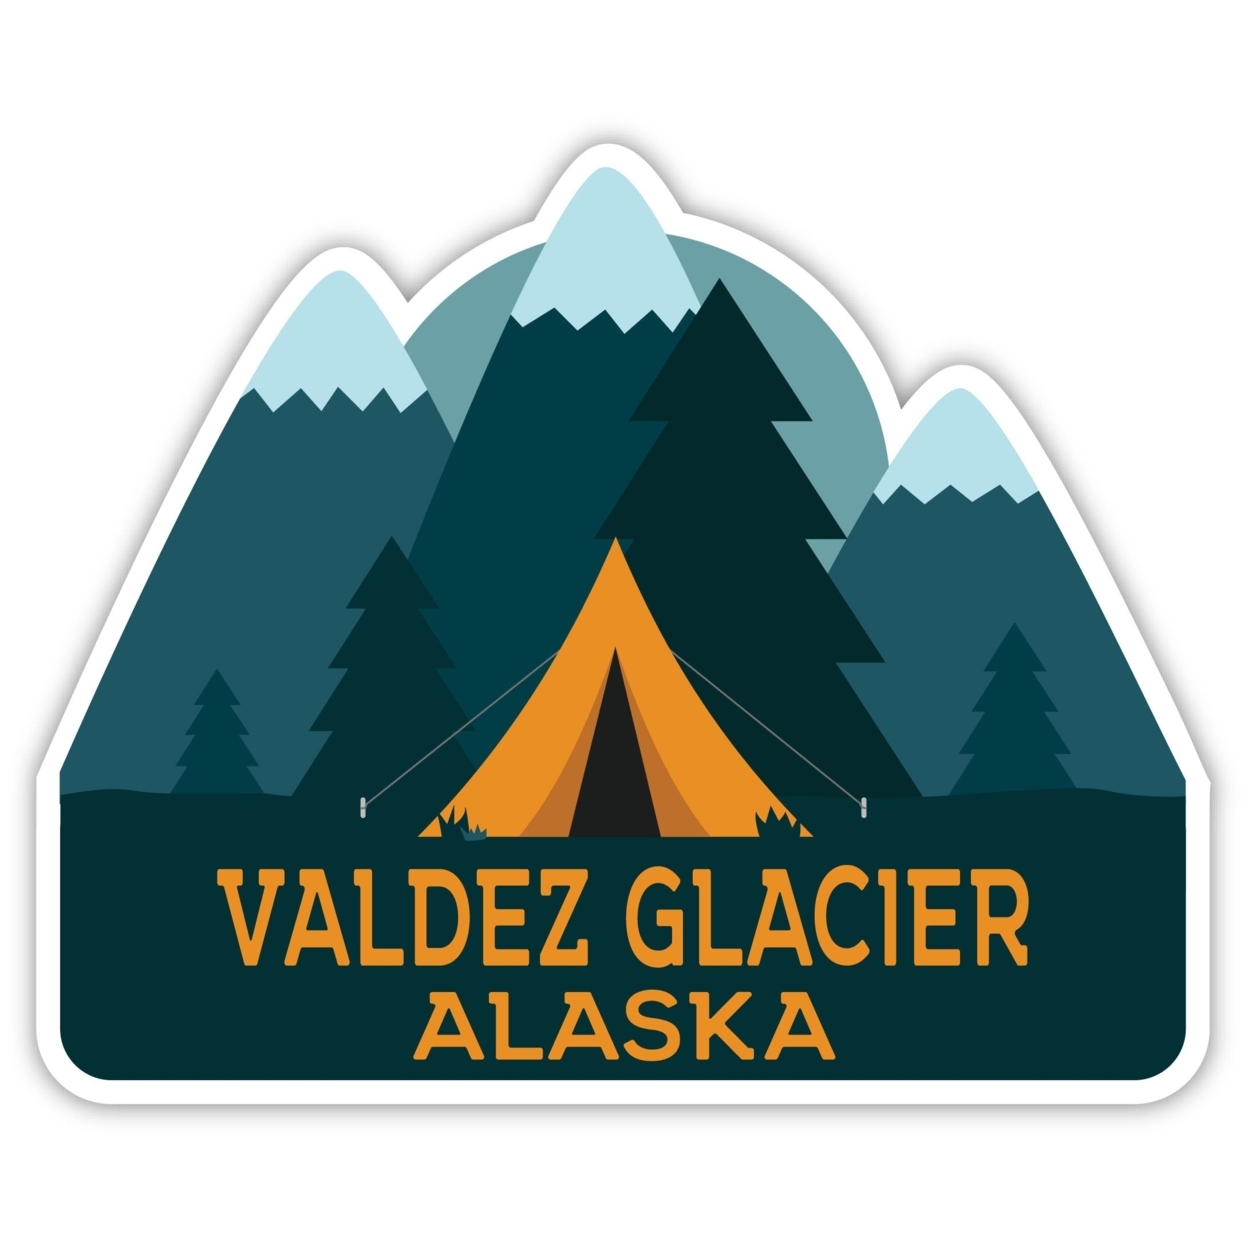 Valdez Glacier Alaska Souvenir Decorative Stickers (Choose Theme And Size) - Single Unit, 2-Inch, Tent